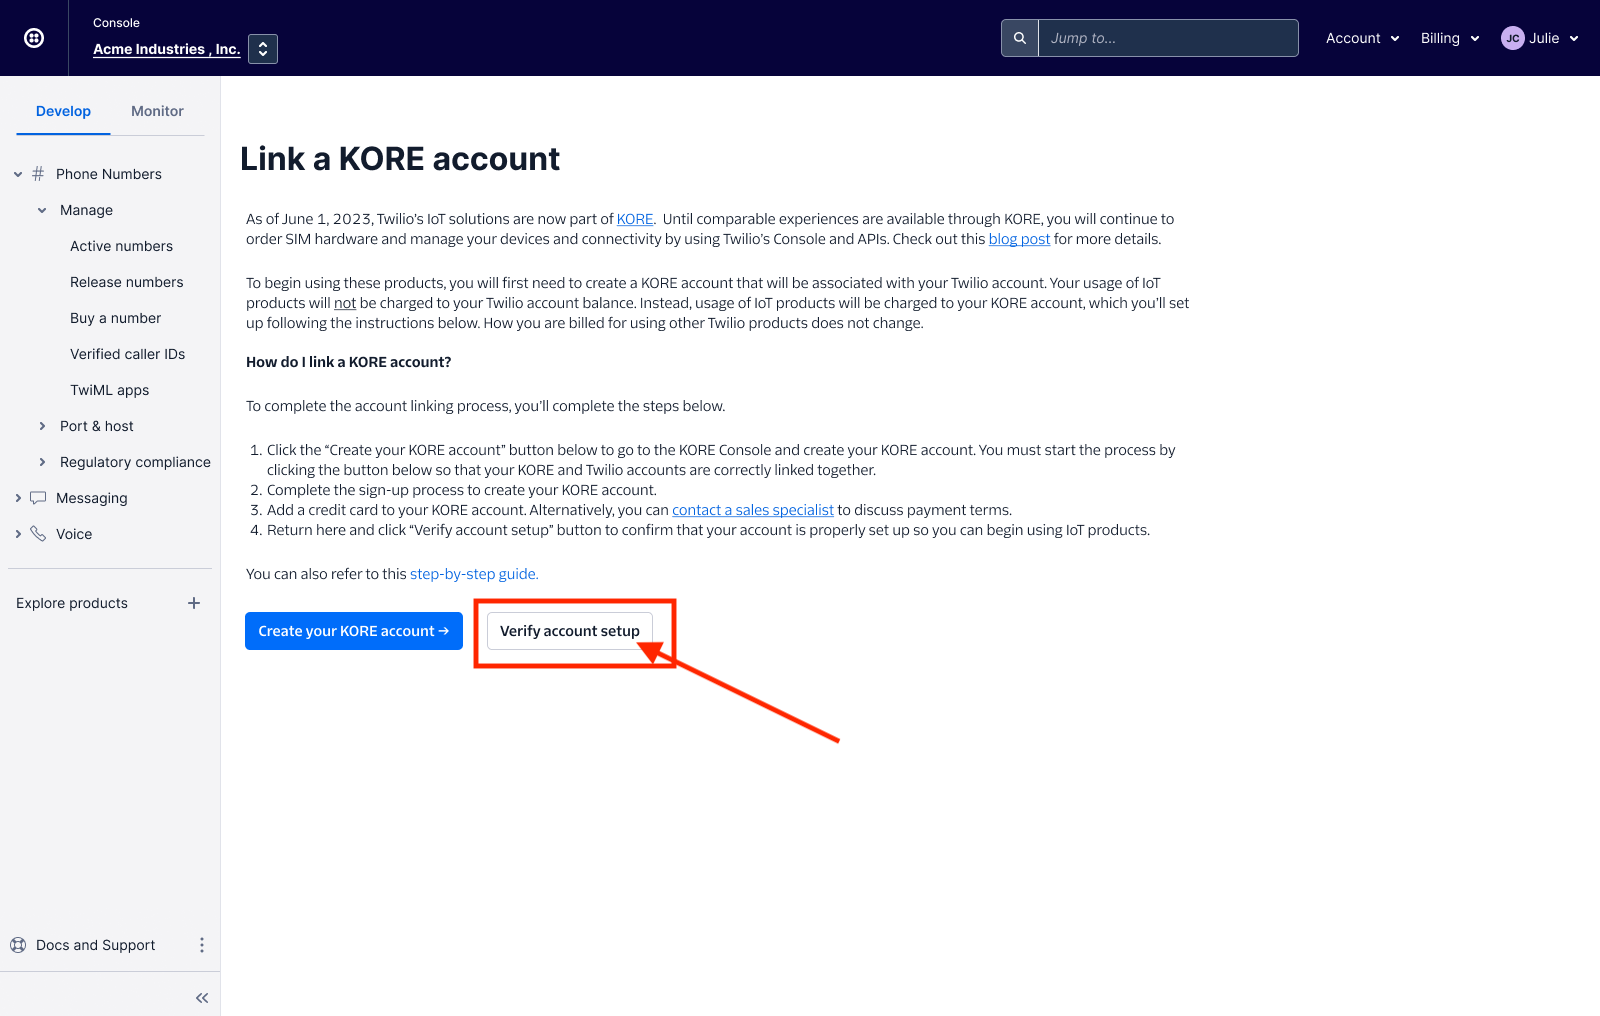 iot-kore-verify-account-setup.